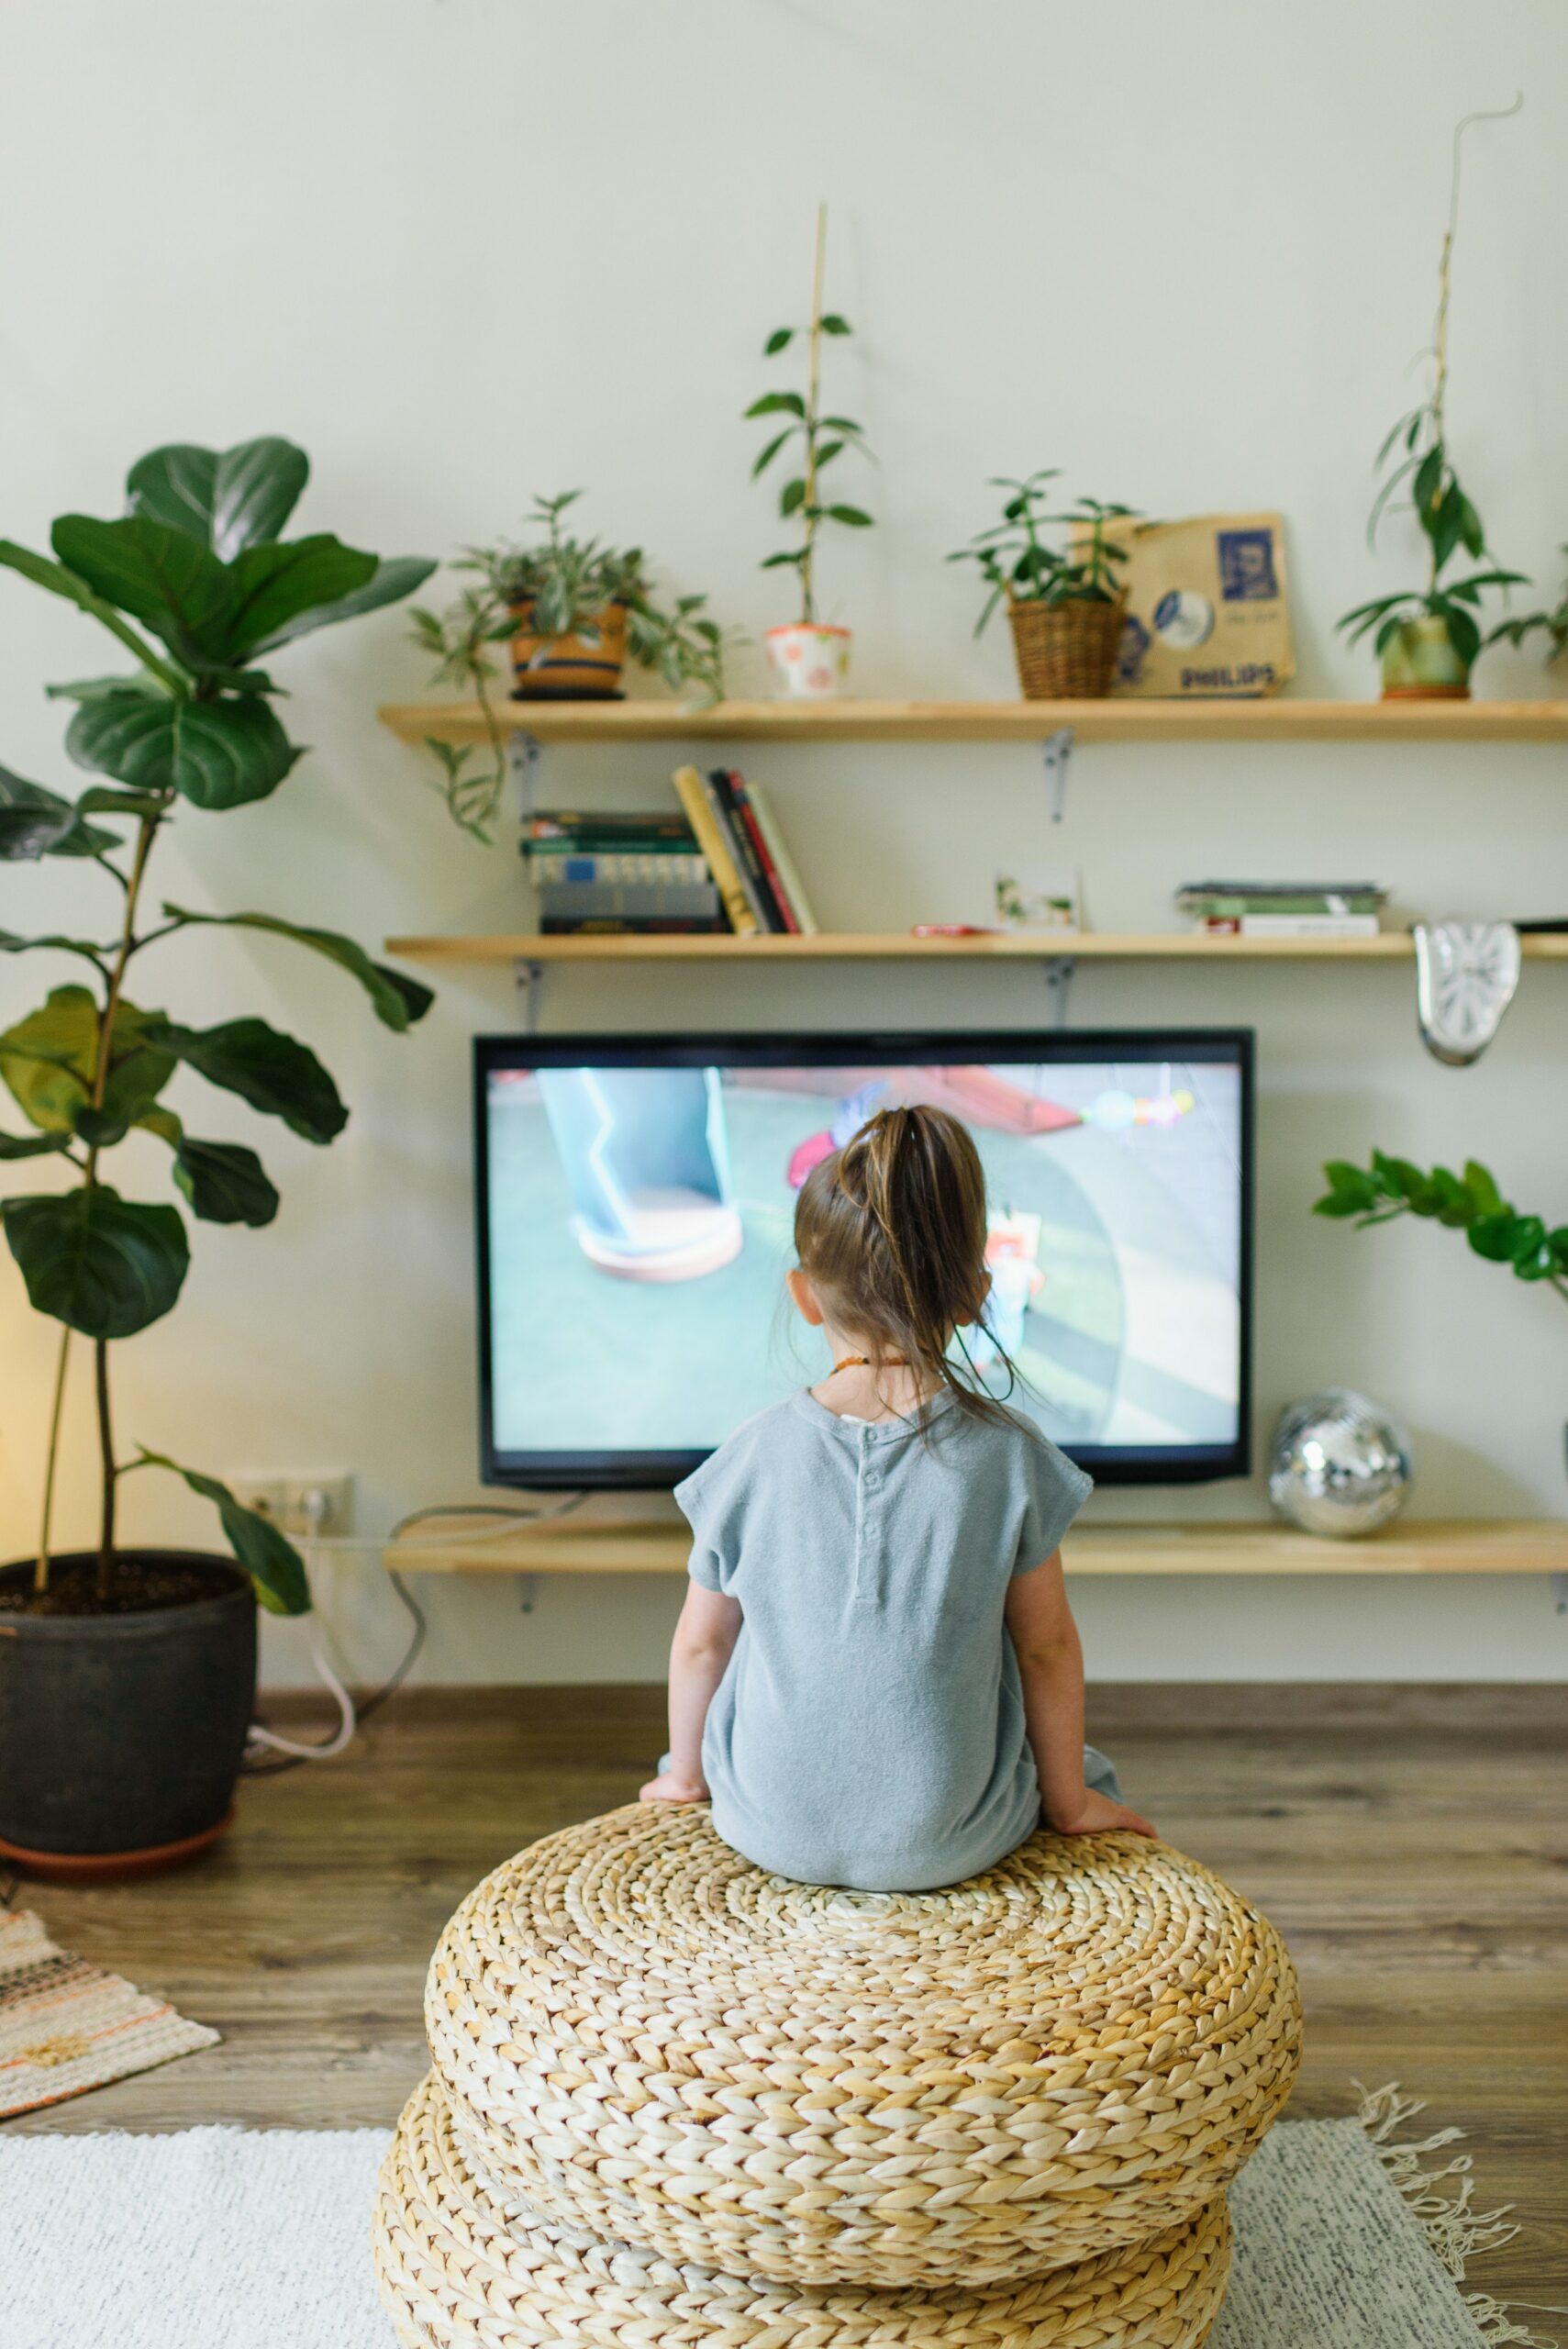 Lire la suite à propos de l’article Votre enfant et les écrans (jeux vidéo et écran) : addiction ou plaisir ?